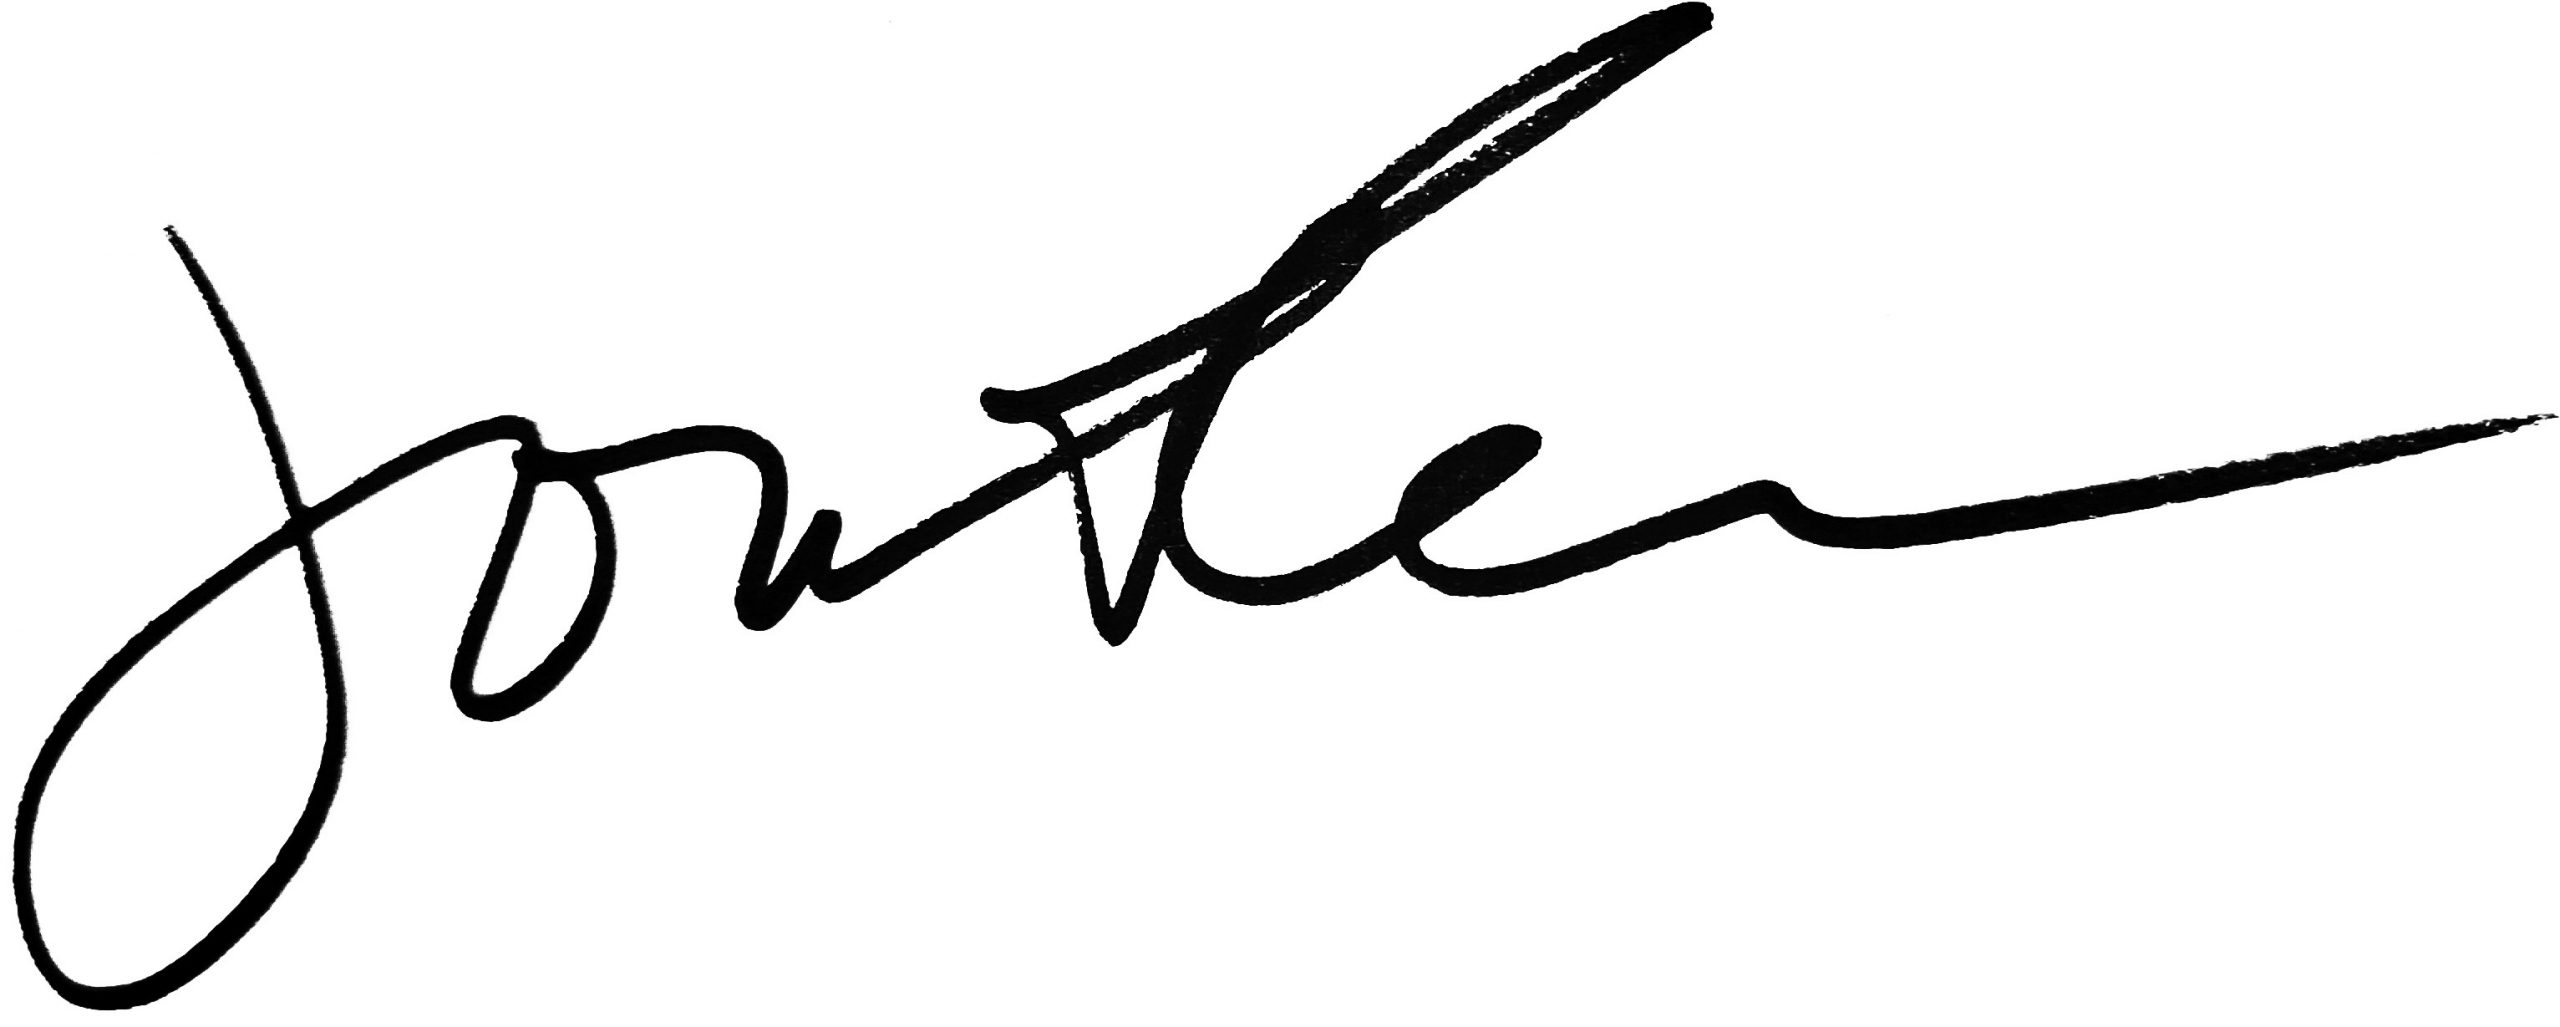 President Jonathan Koppell's signature.